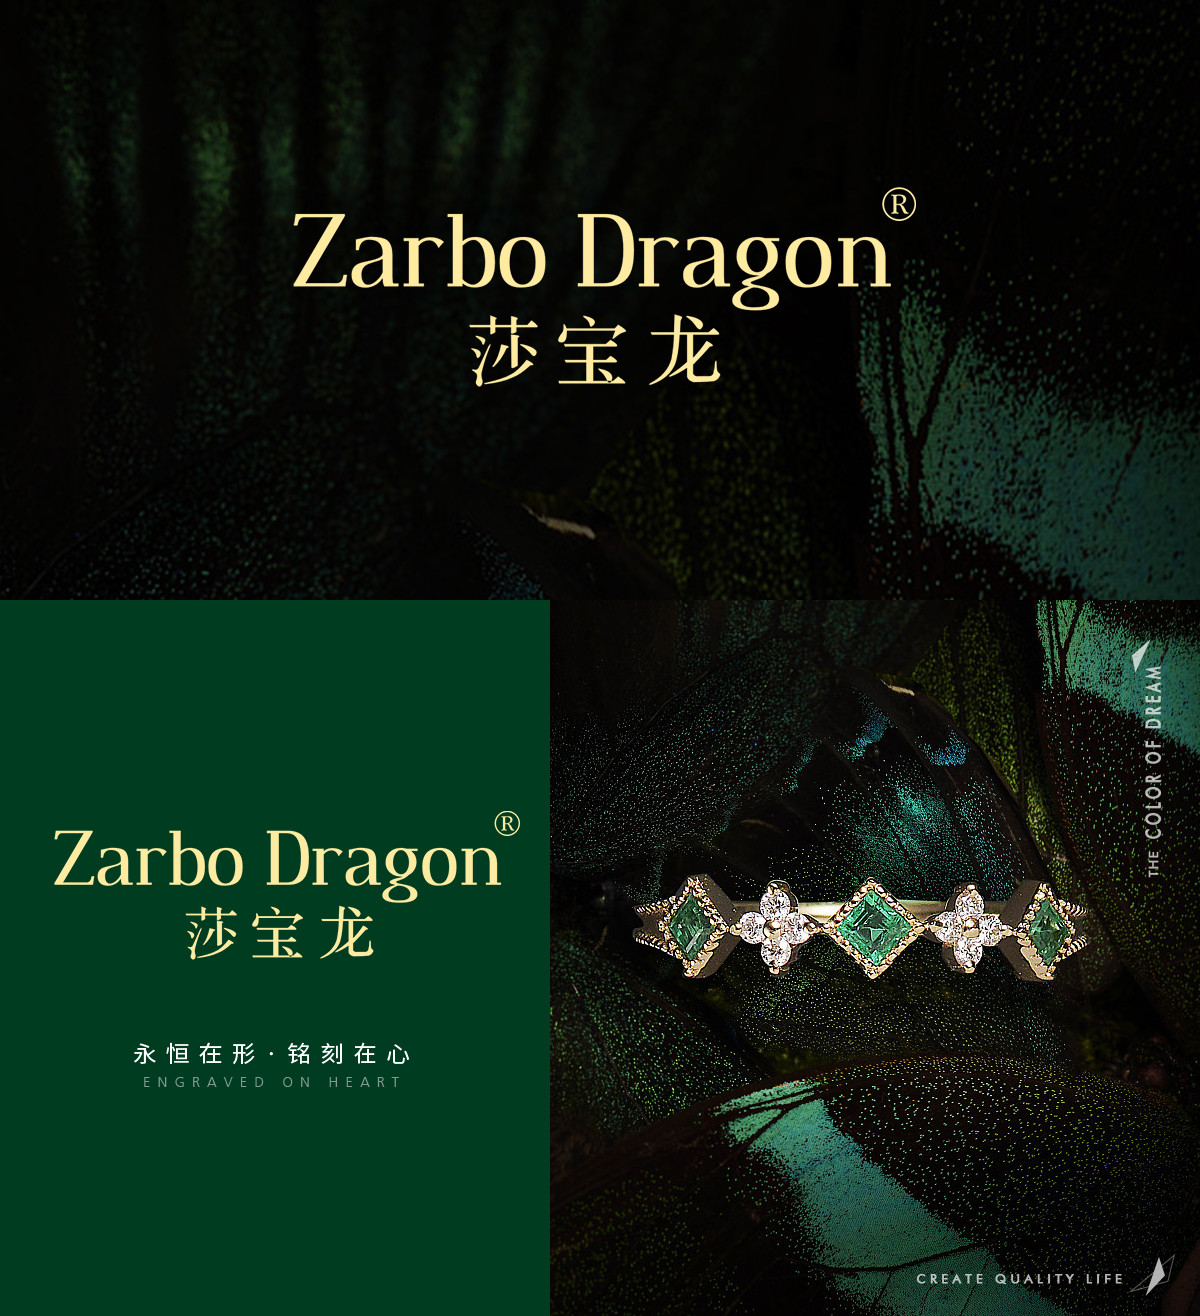 莎宝龙 ZARBO DRAGON